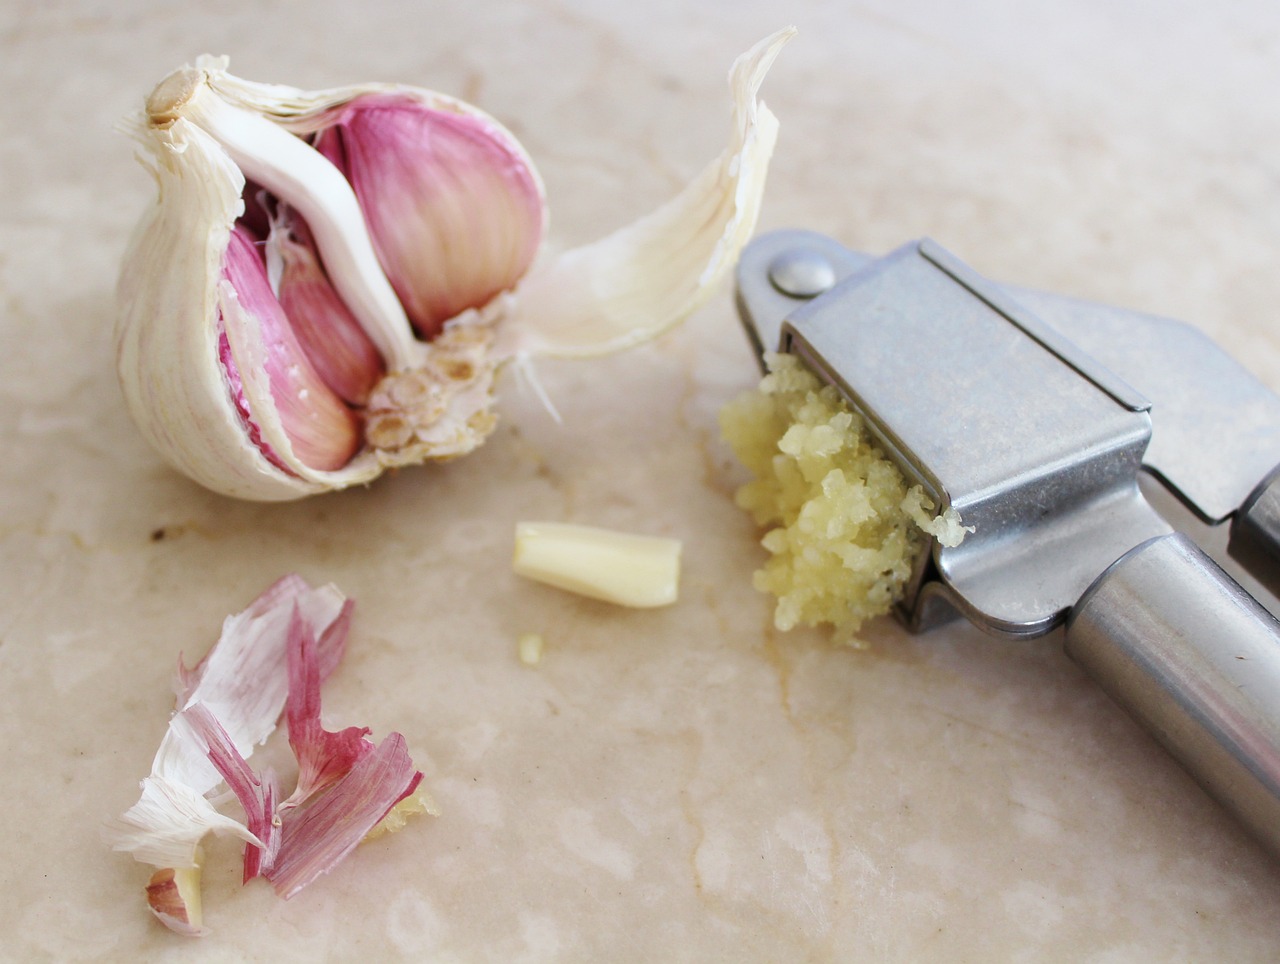 proč nevyhazovat slupky od česneku? zachrání mrkev, růže a vylepší domácí pečivo